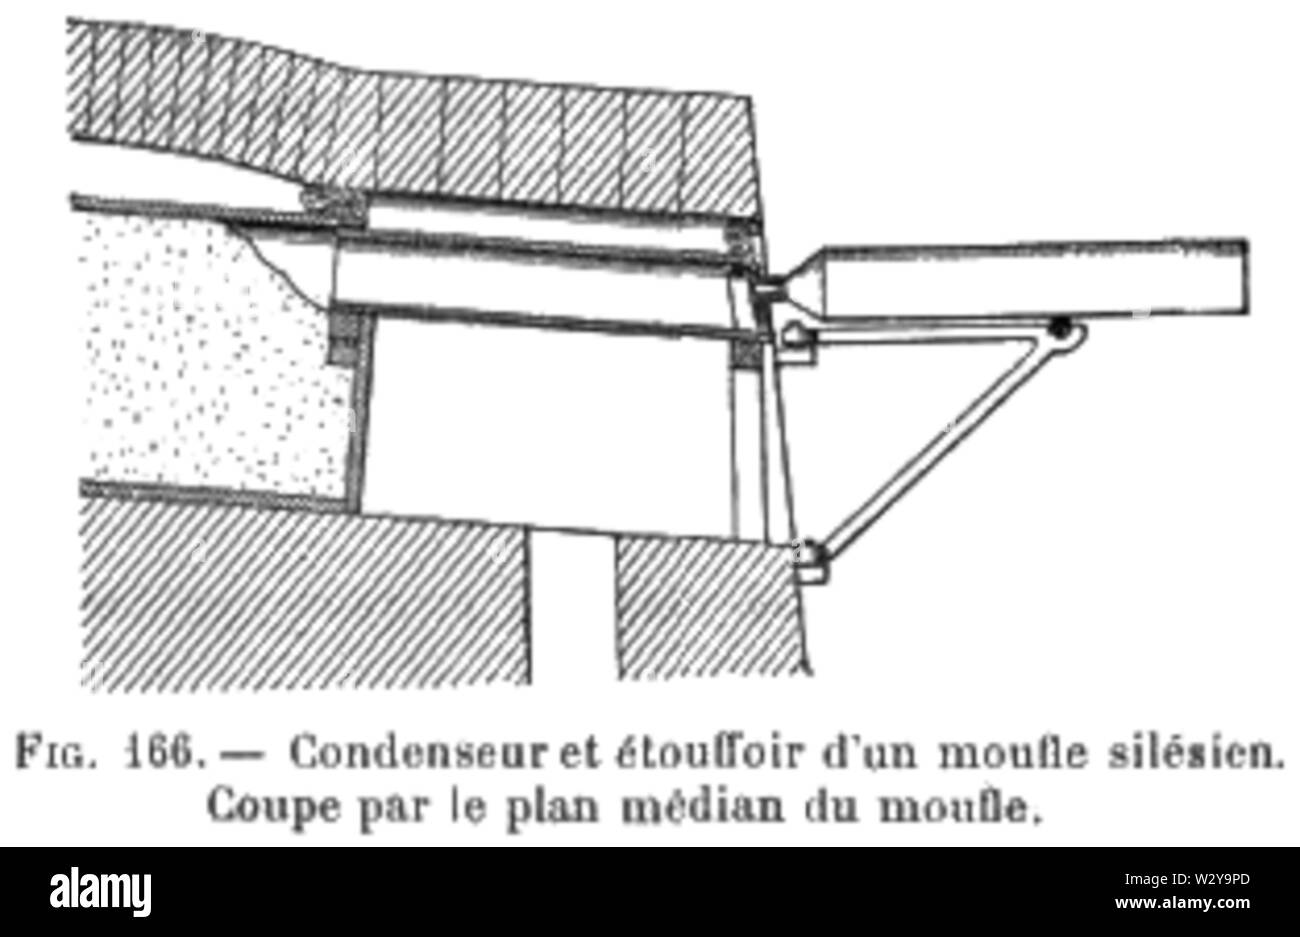 Métallurgie du zinc - Condenseur et étouffoir d'un moufle de four silésien  (p 402 Stock Photo - Alamy